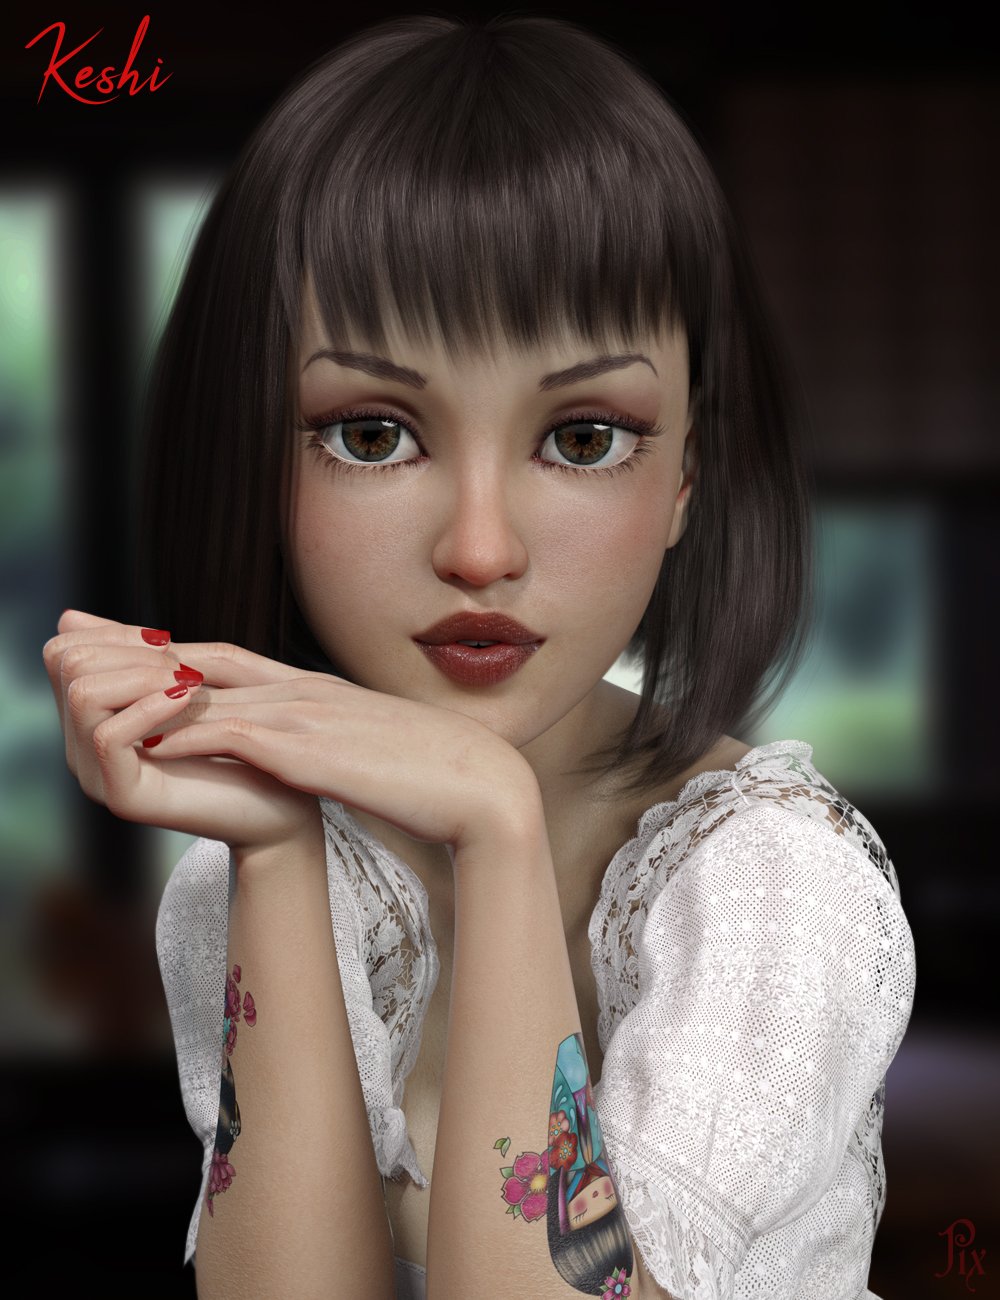 Pix Keshi for The Girl 8 by: Pixeluna, 3D Models by Daz 3D